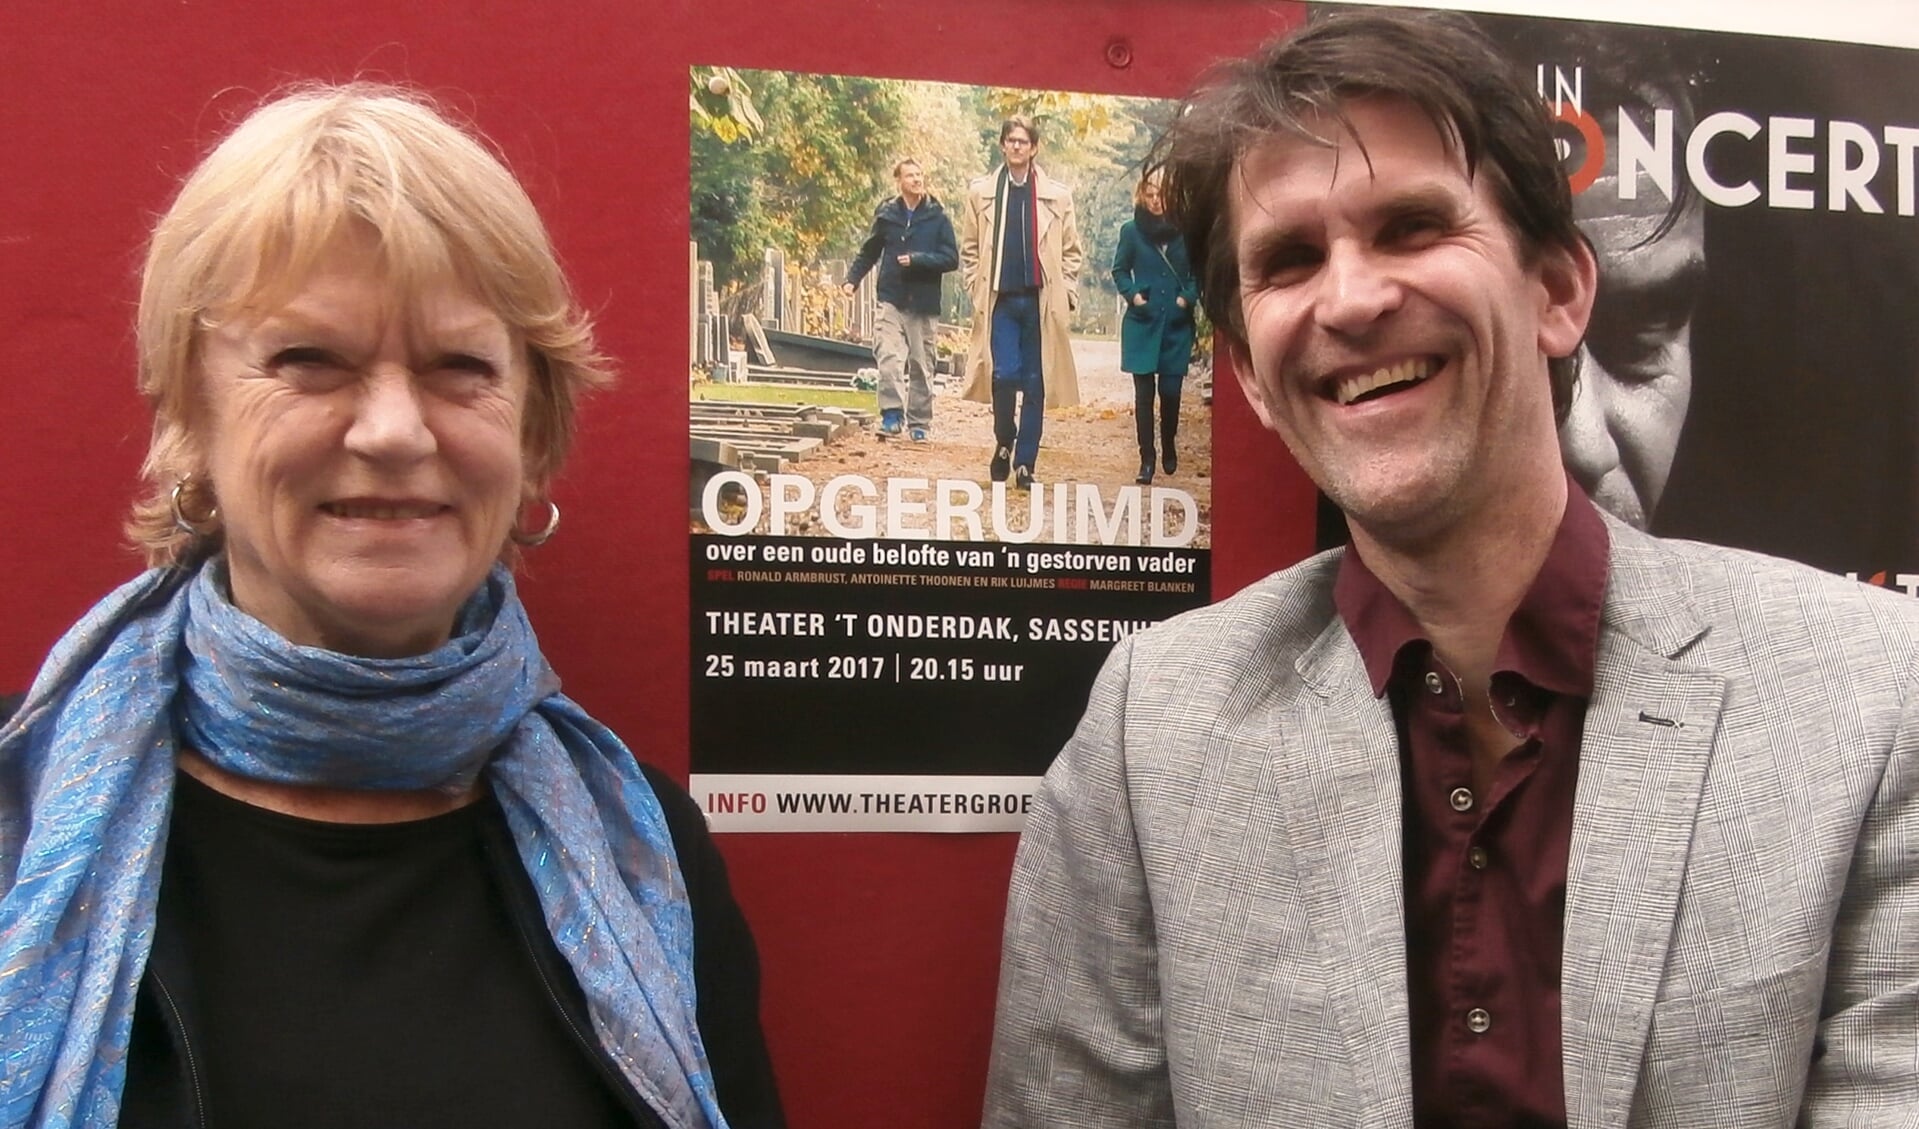 Margreet Blanken en Rik Luijmes kwamen langs in theater ’t Onderdak, waar ze op 25 maart het stuk Opgeruimd spelen. ‘Je voelt je welkom in dit theater.’ | Foto: pr.